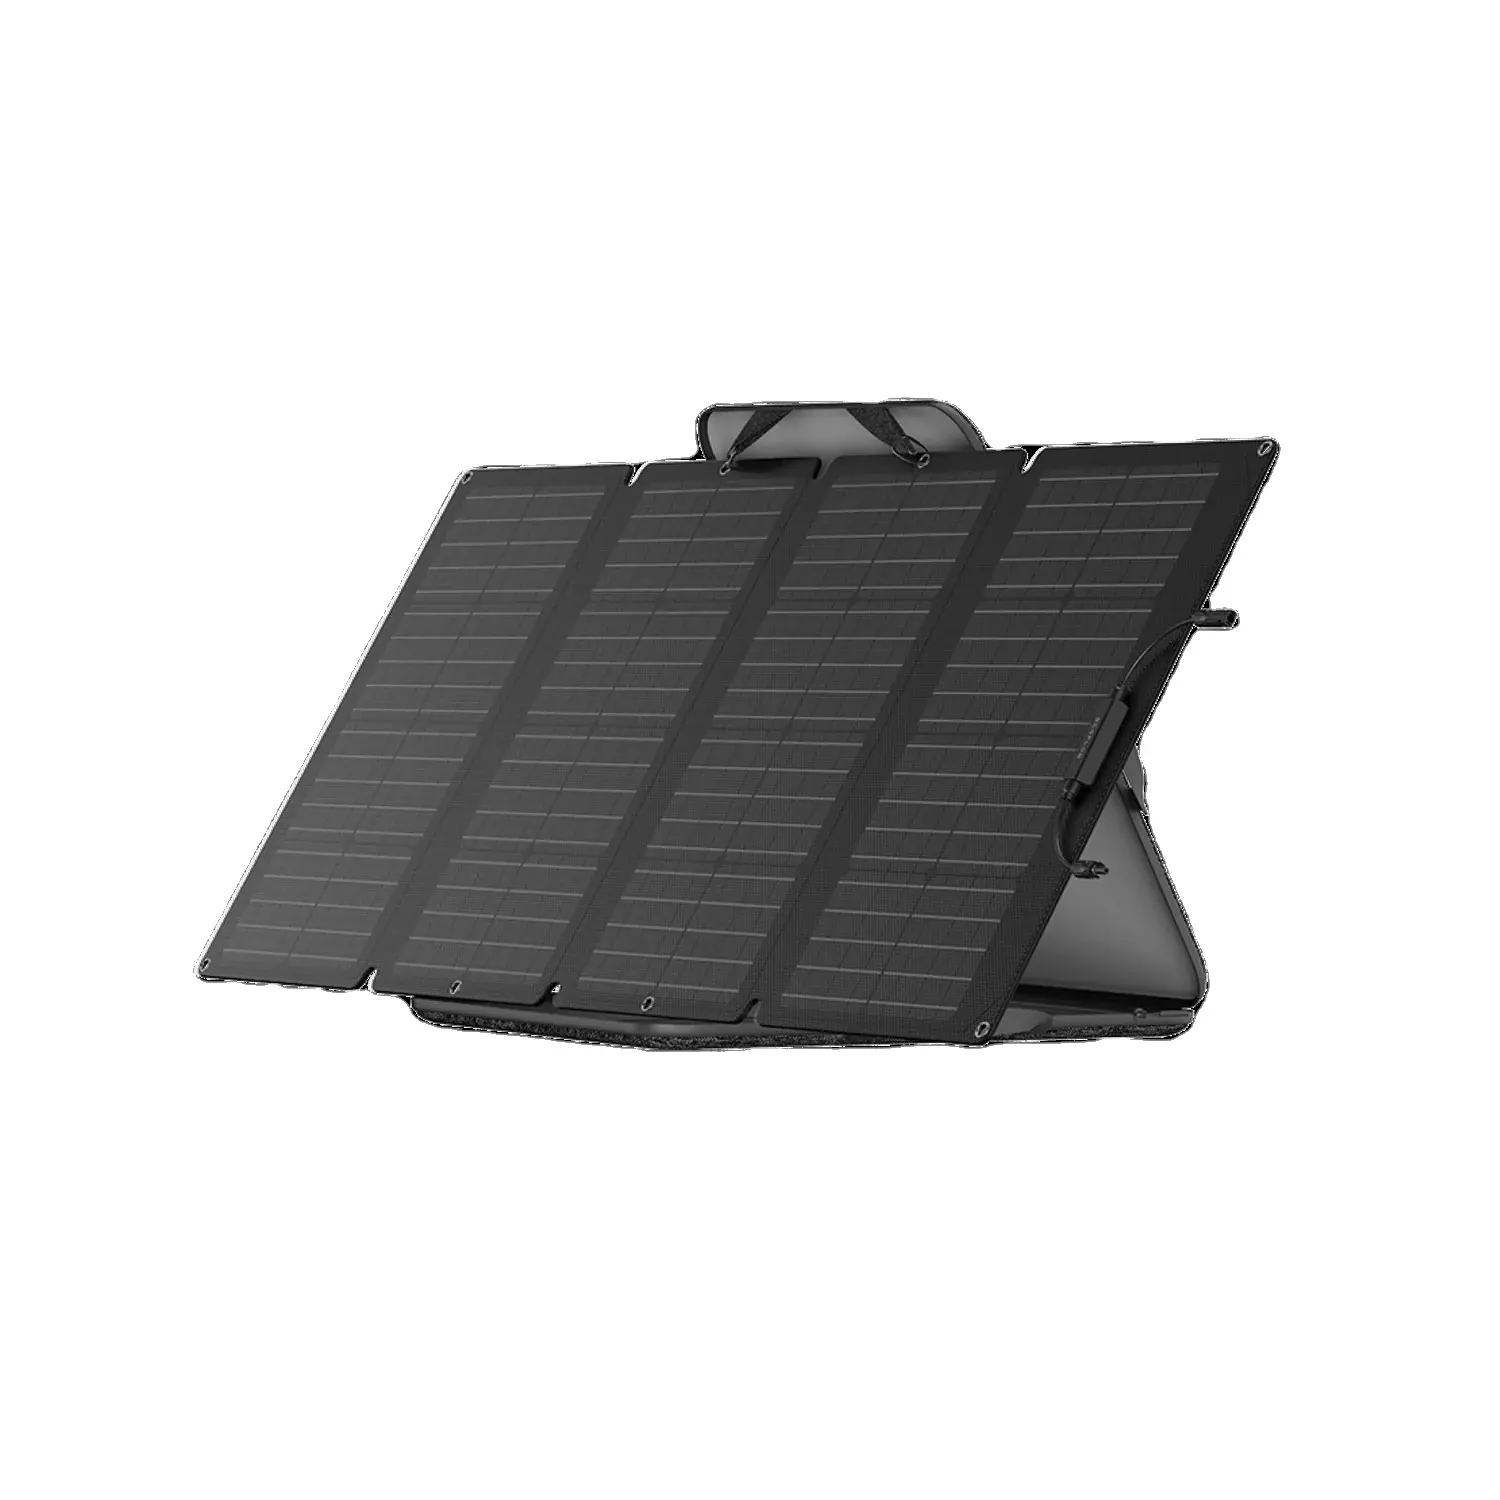 160 Вт портативная солнечная панель EcoFlow, складная, 215-22% эффективность